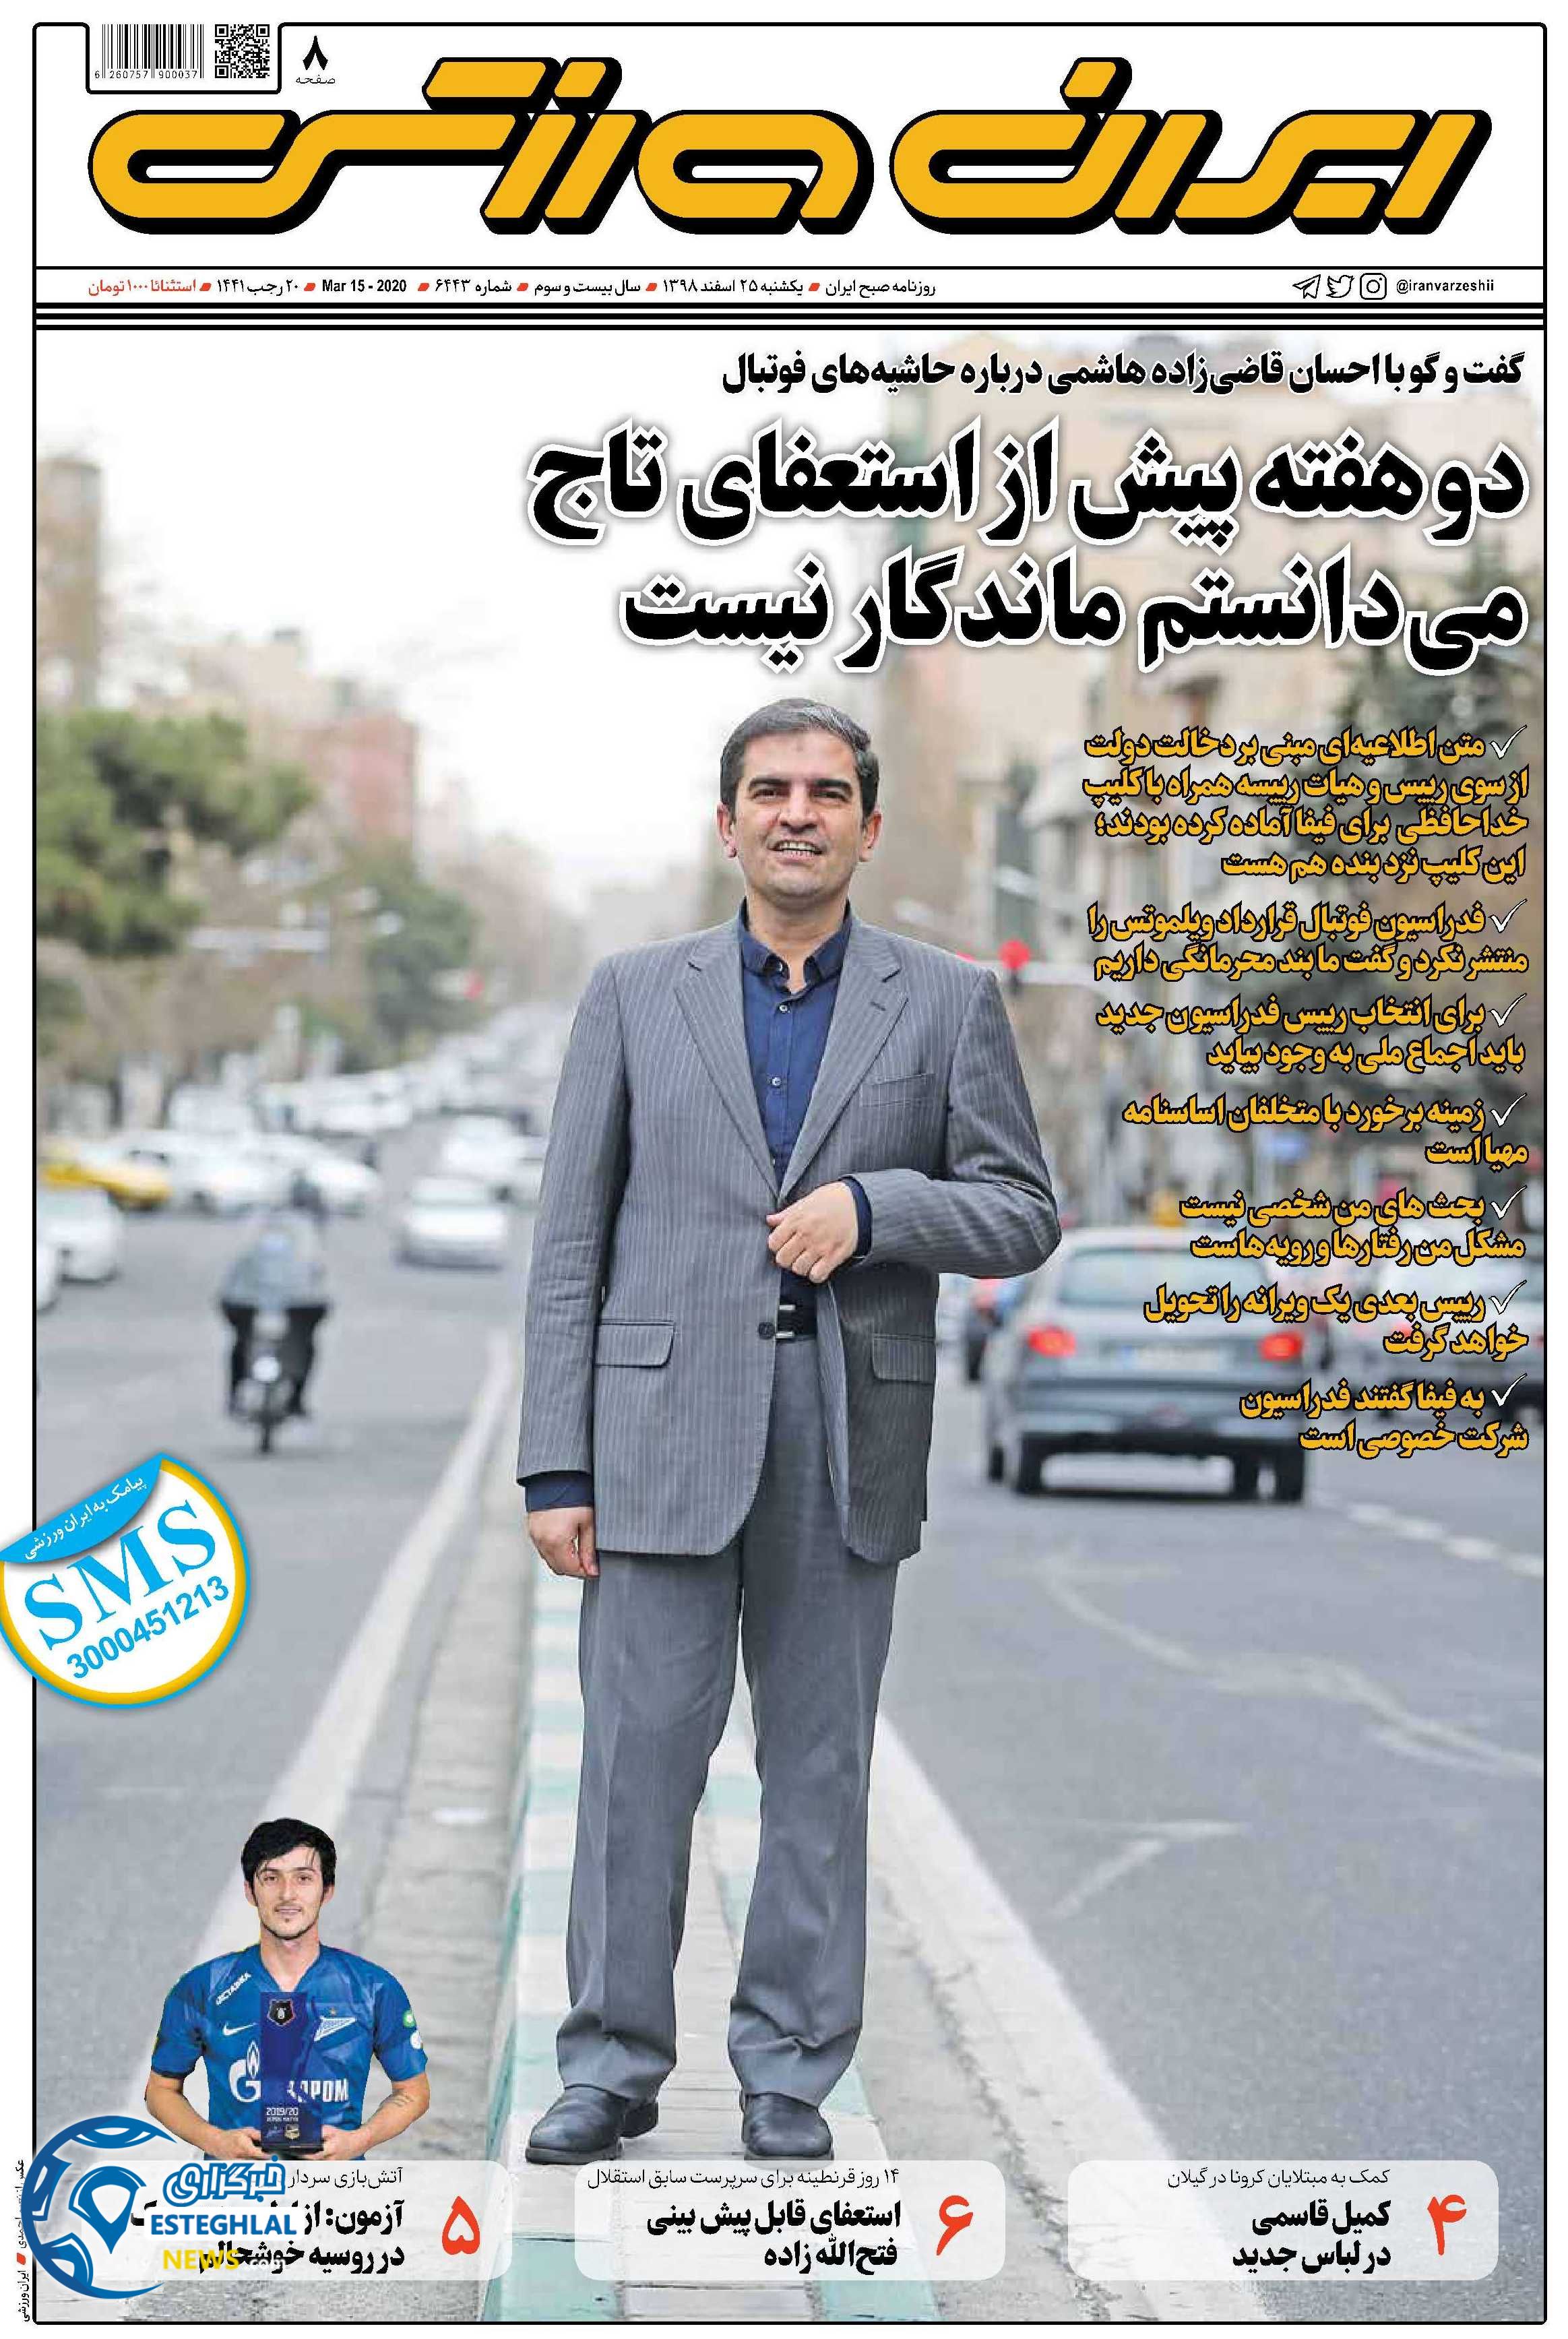 روزنامه ایران ورزشی یکشنبه 25 اسفند 1398        